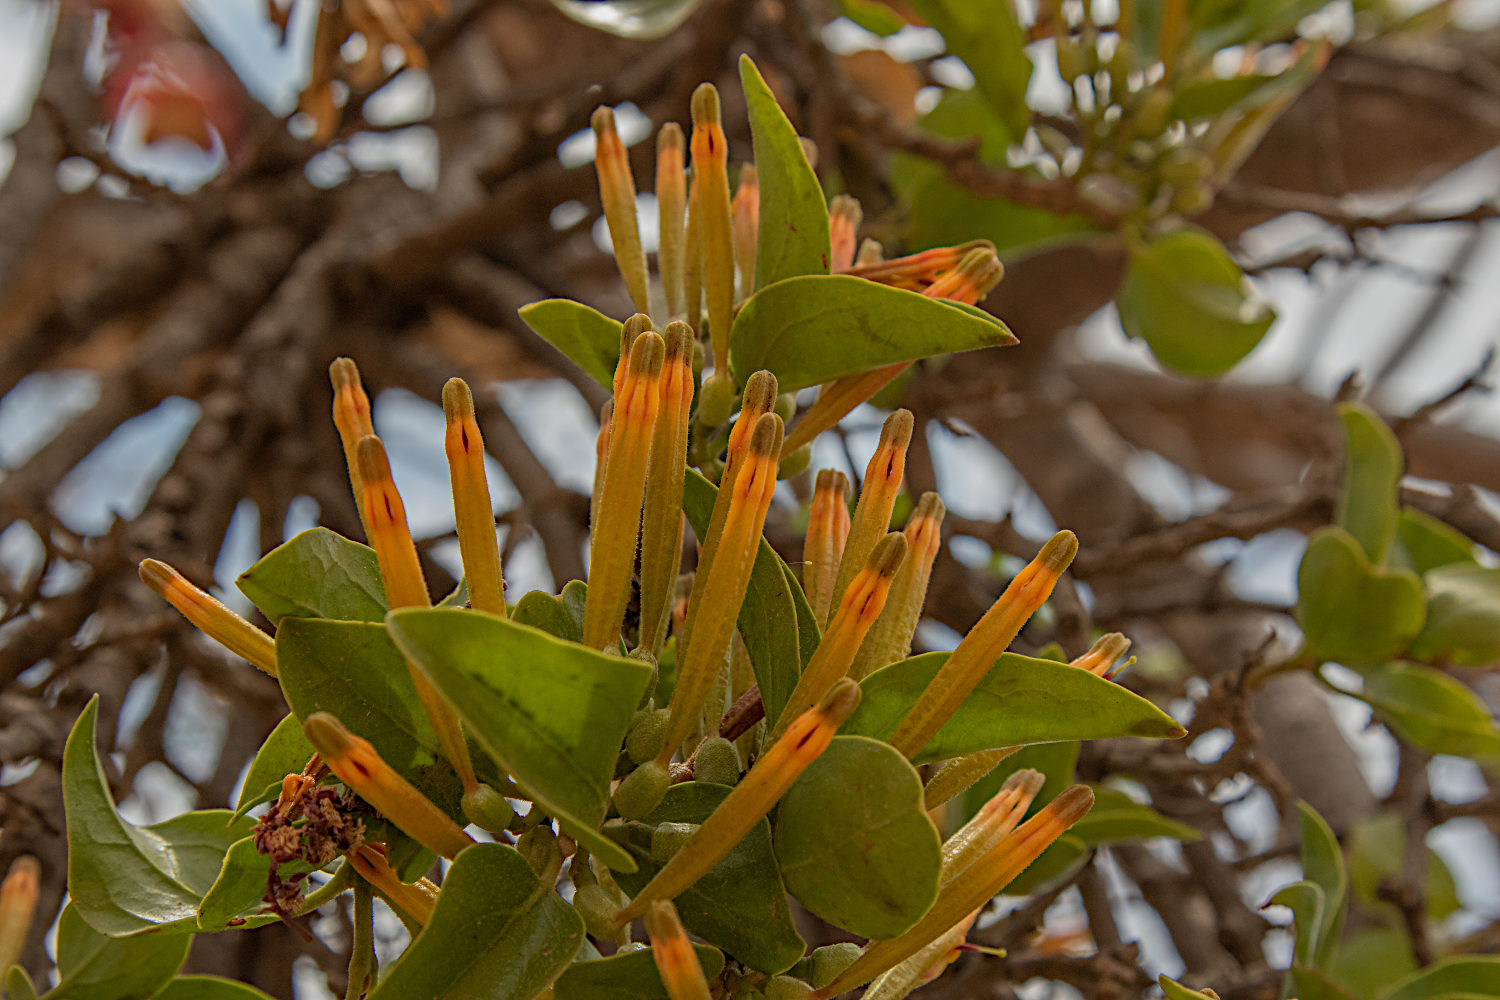 Agelanthus crassifolius